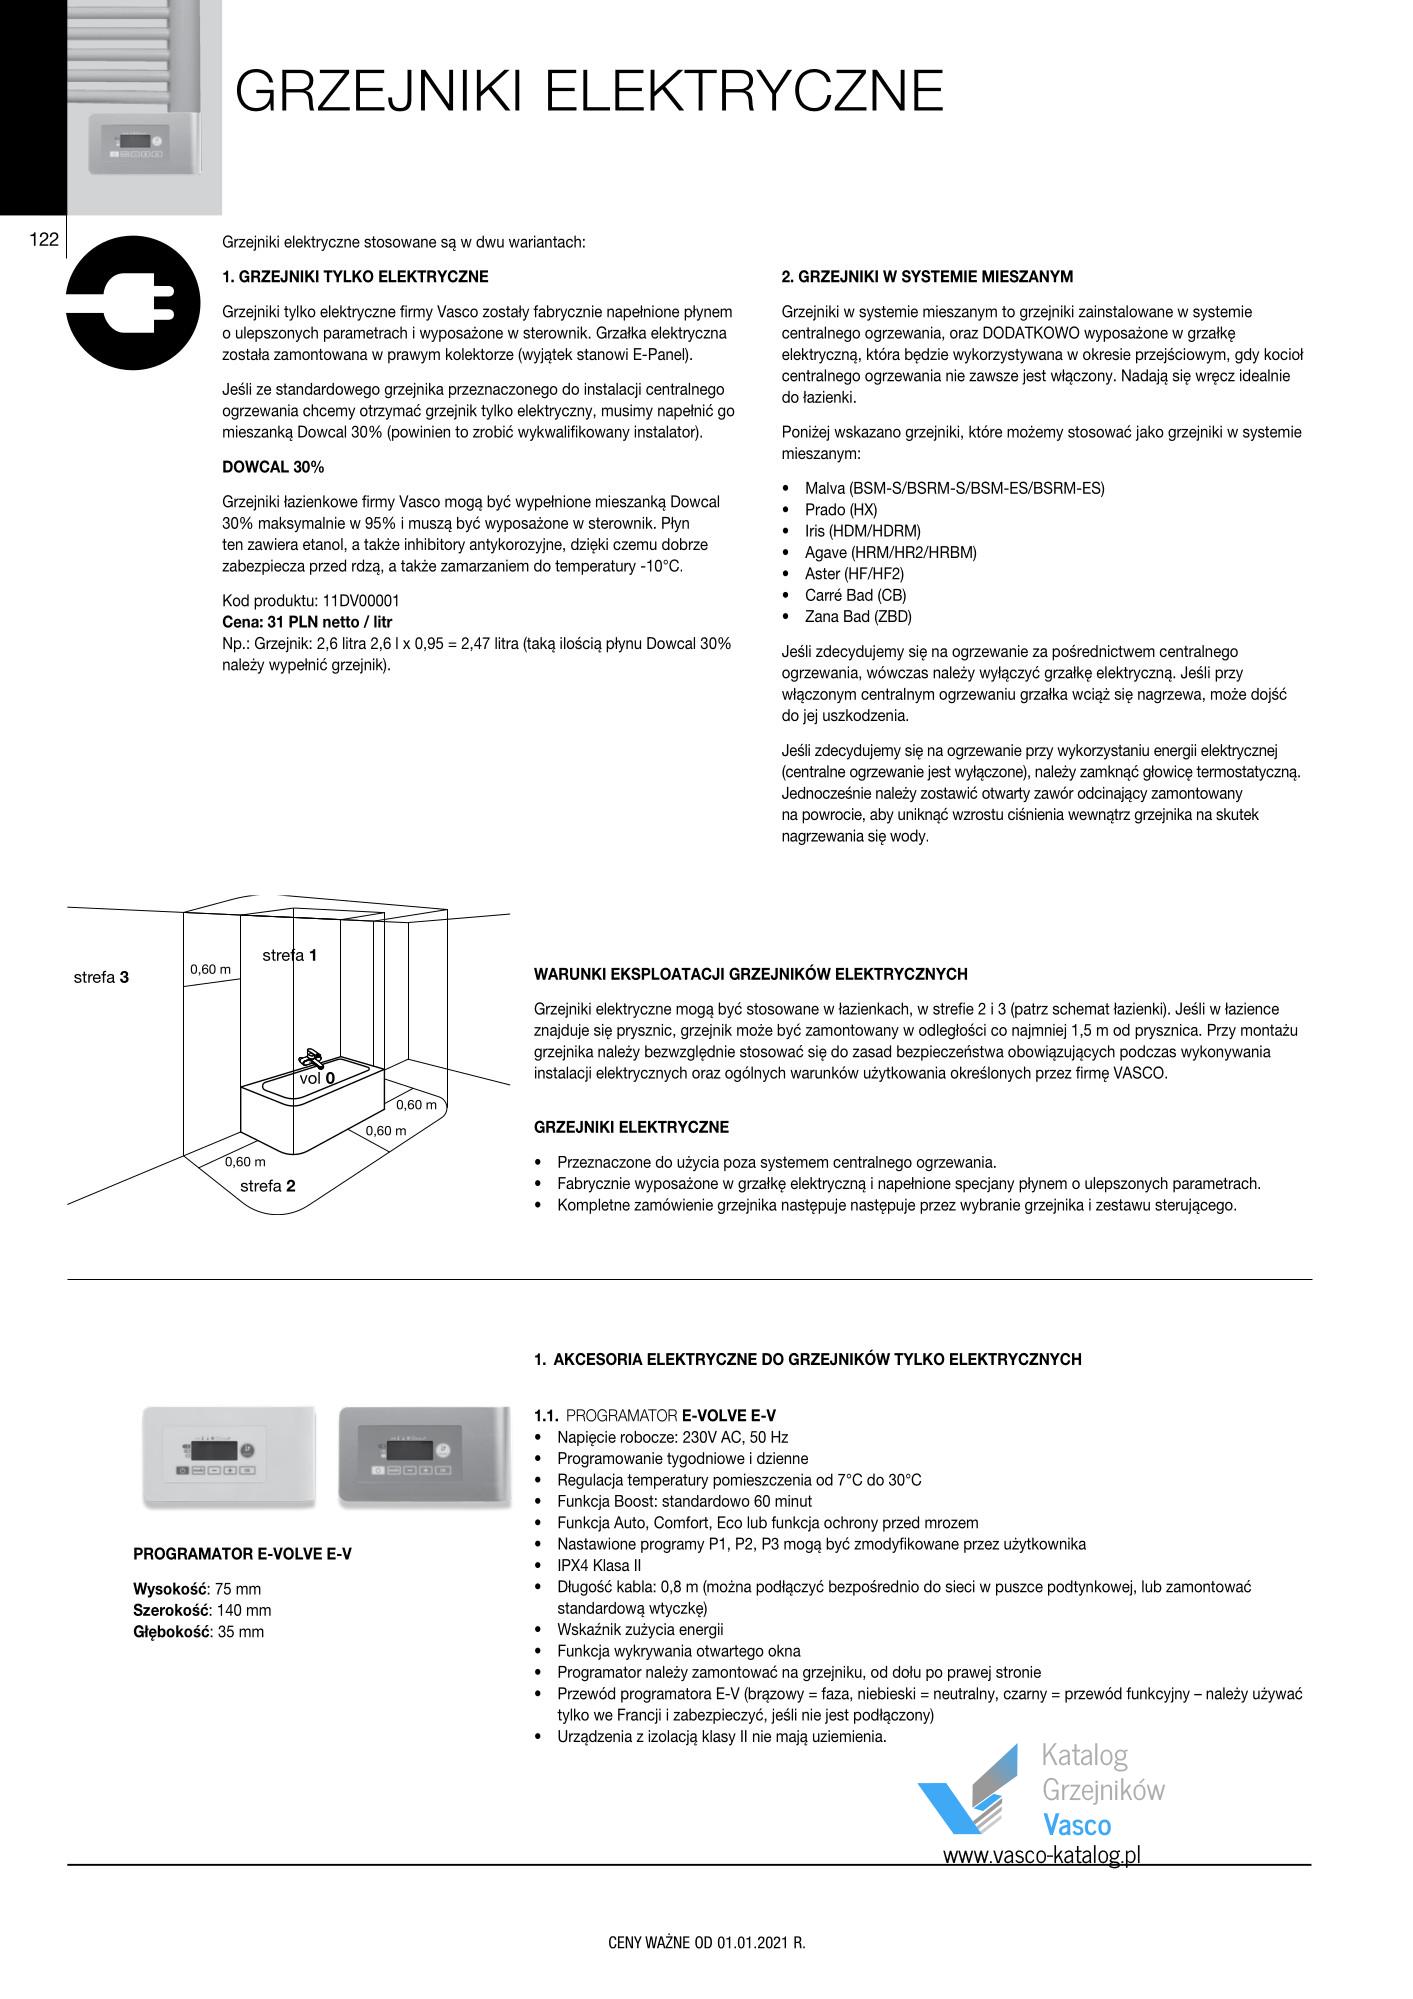 Katalog Vasco 2021 - Grzejniki elektryczne